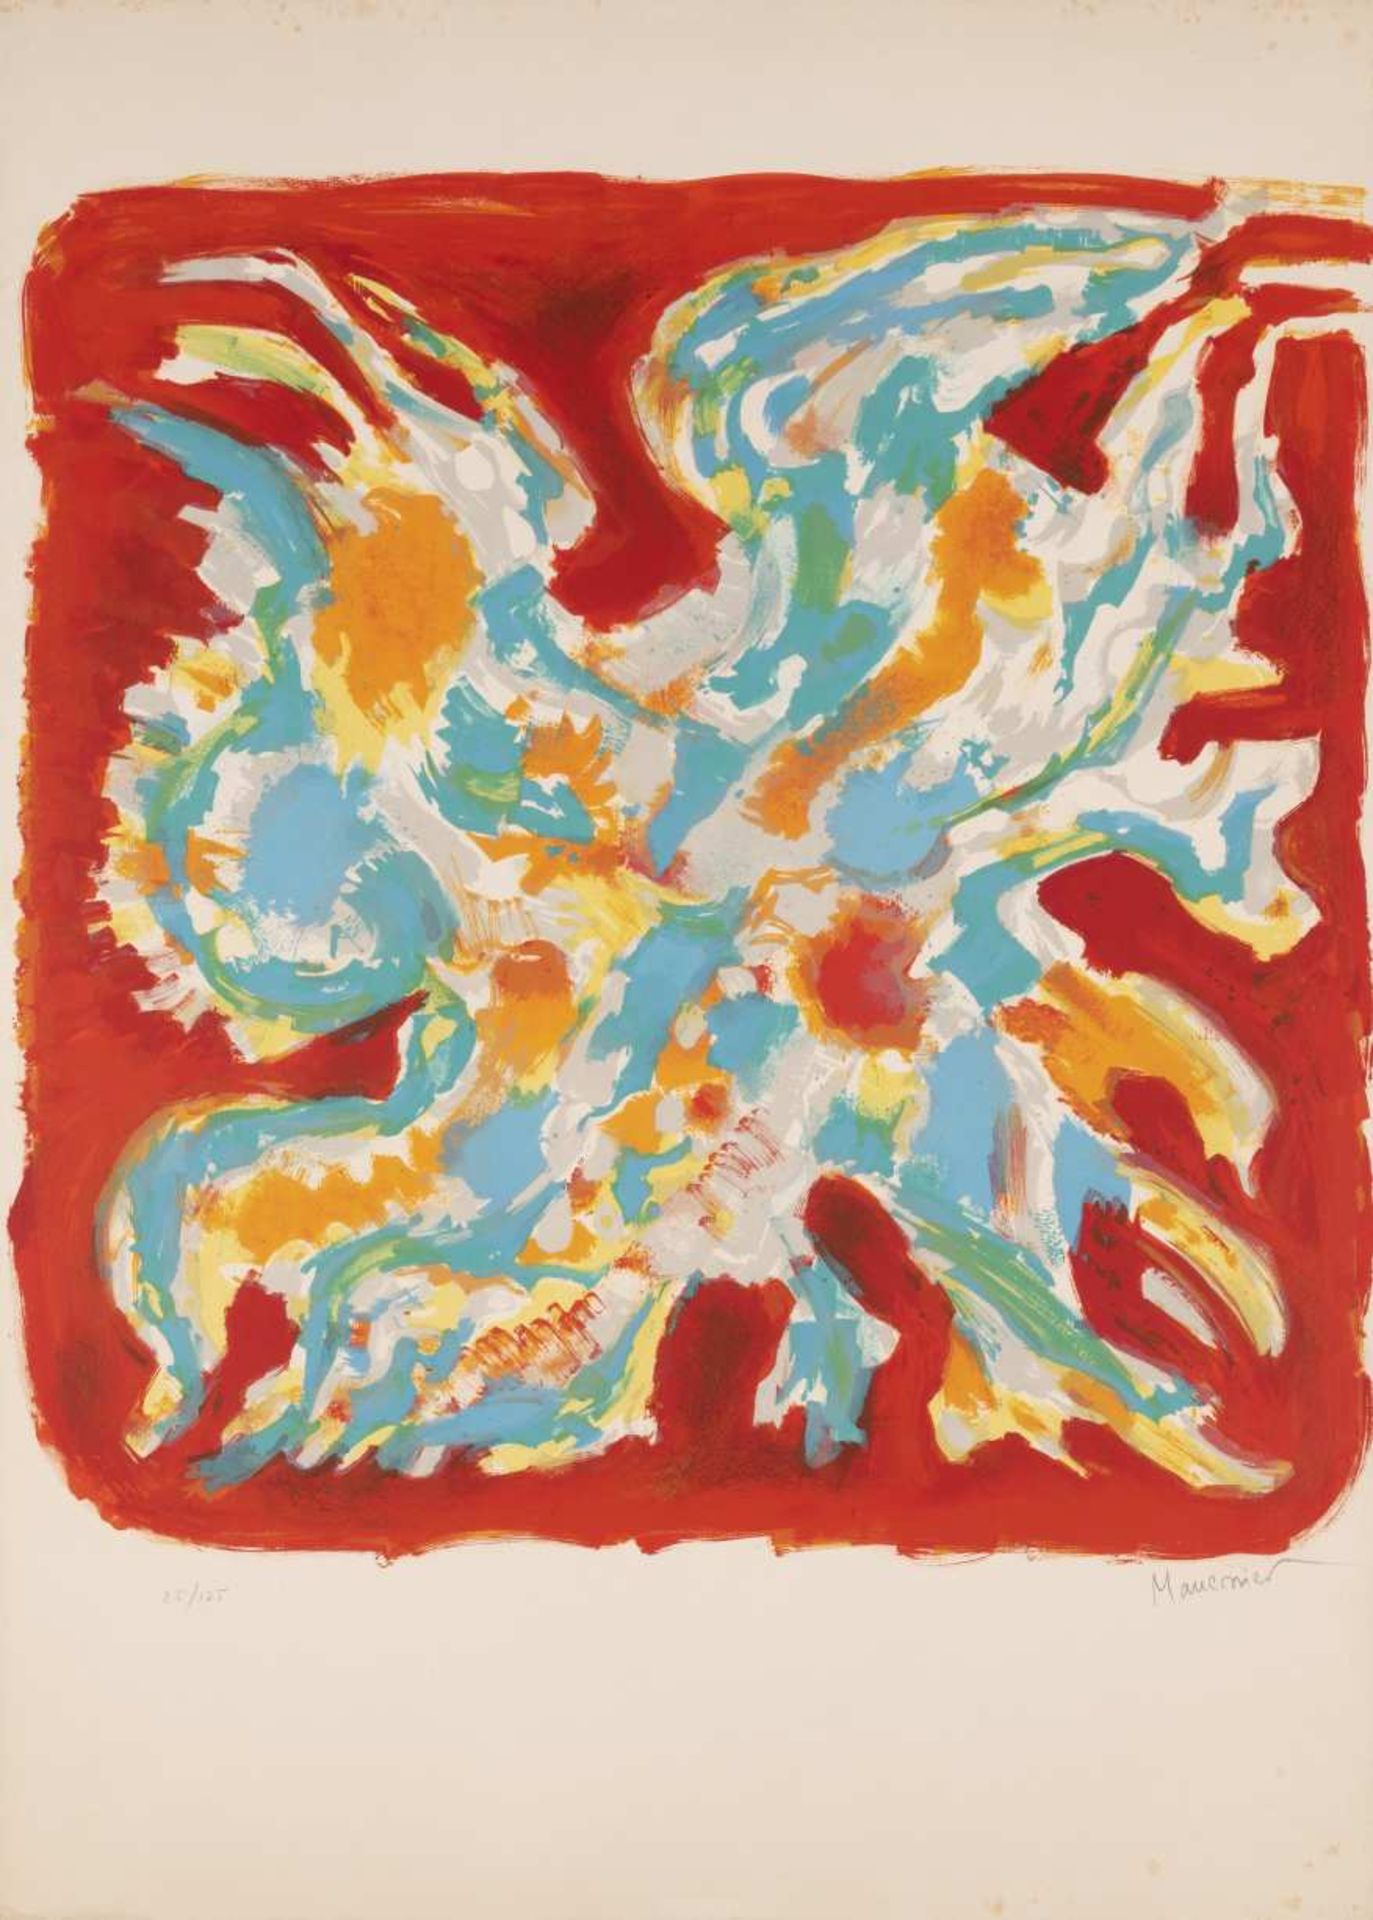 ALFRED MANESSIER (1911-1993) Alléluia, 1965 Lithographie en couleurs. Signée et numérotée 25/125.